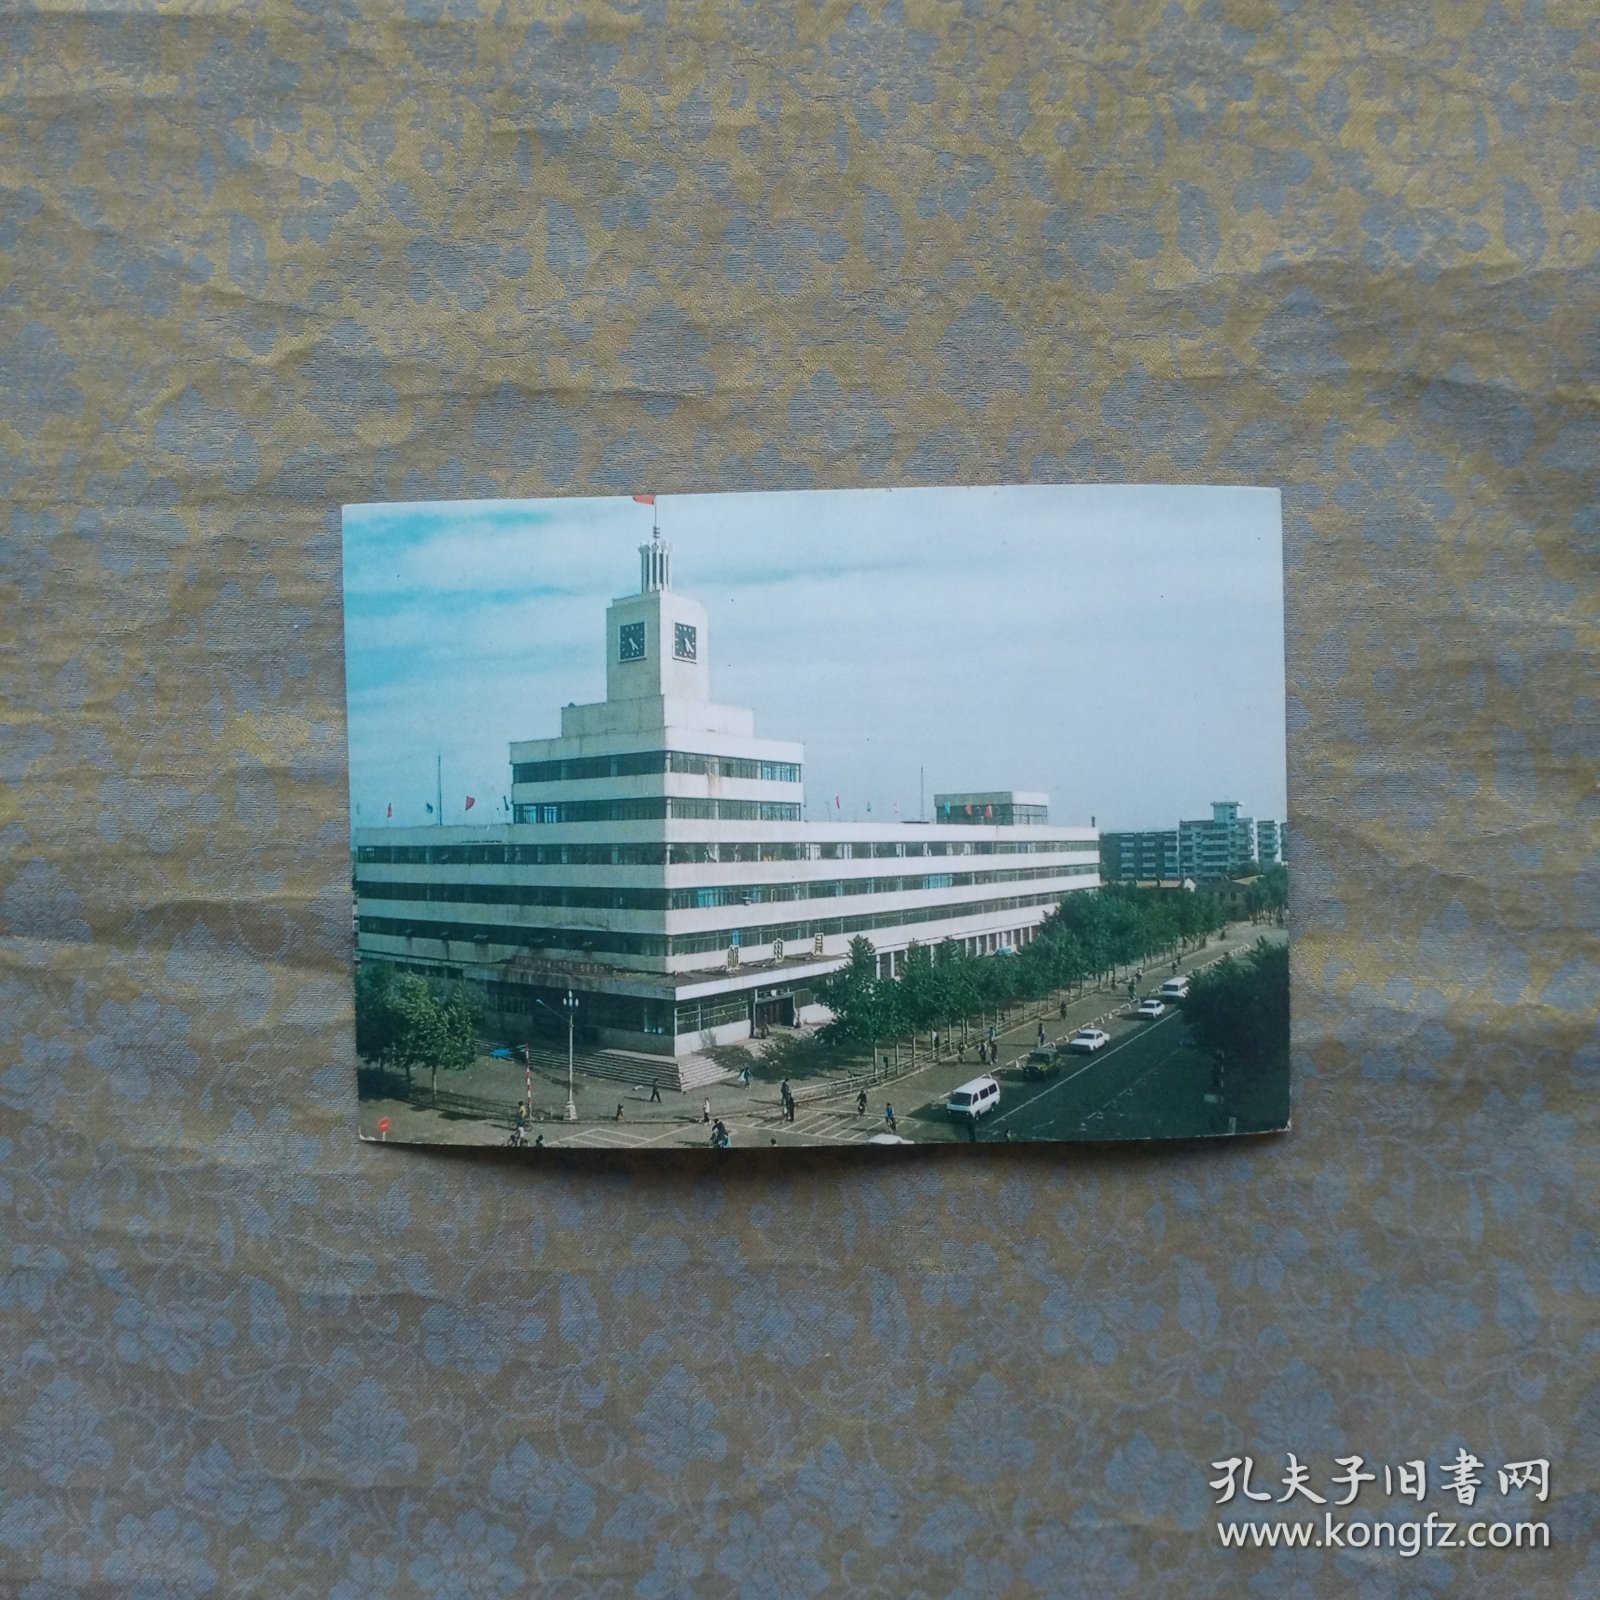 90年代实寄明信片 辽宁市邮票公司 邮电大楼